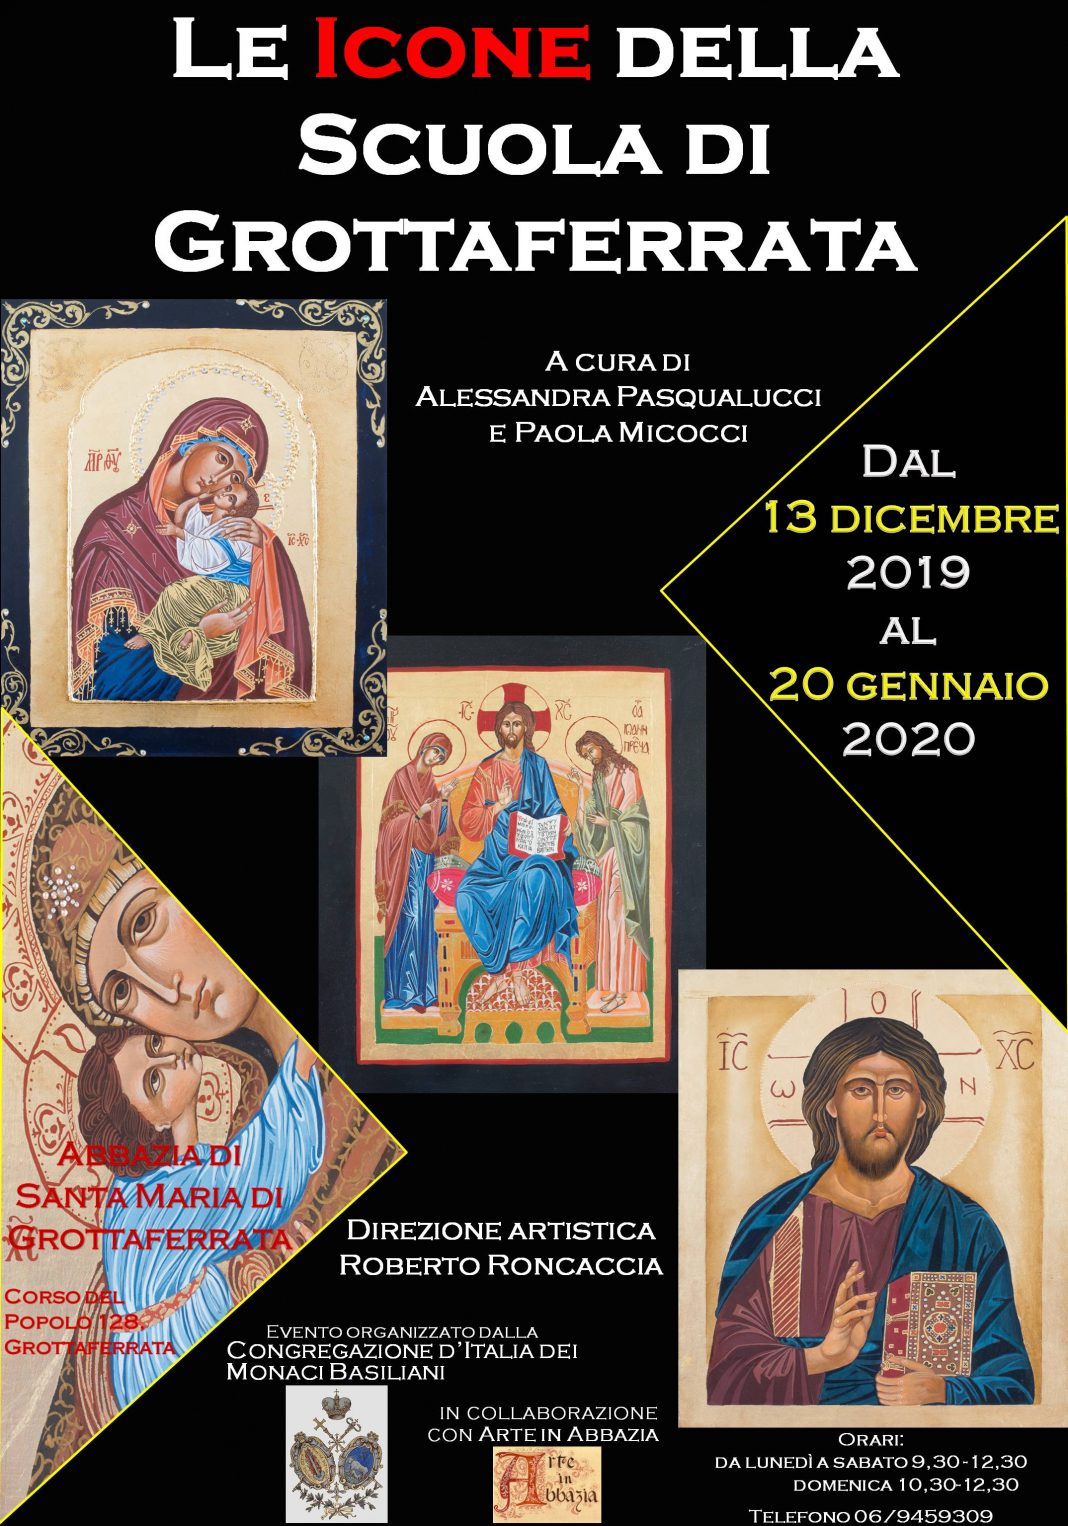 Le Icone della Scuola di Grottaferratahttps://www.exibart.com/repository/media/formidable/11/Locandina-mostra-icone-70x100-1068x1526.jpg